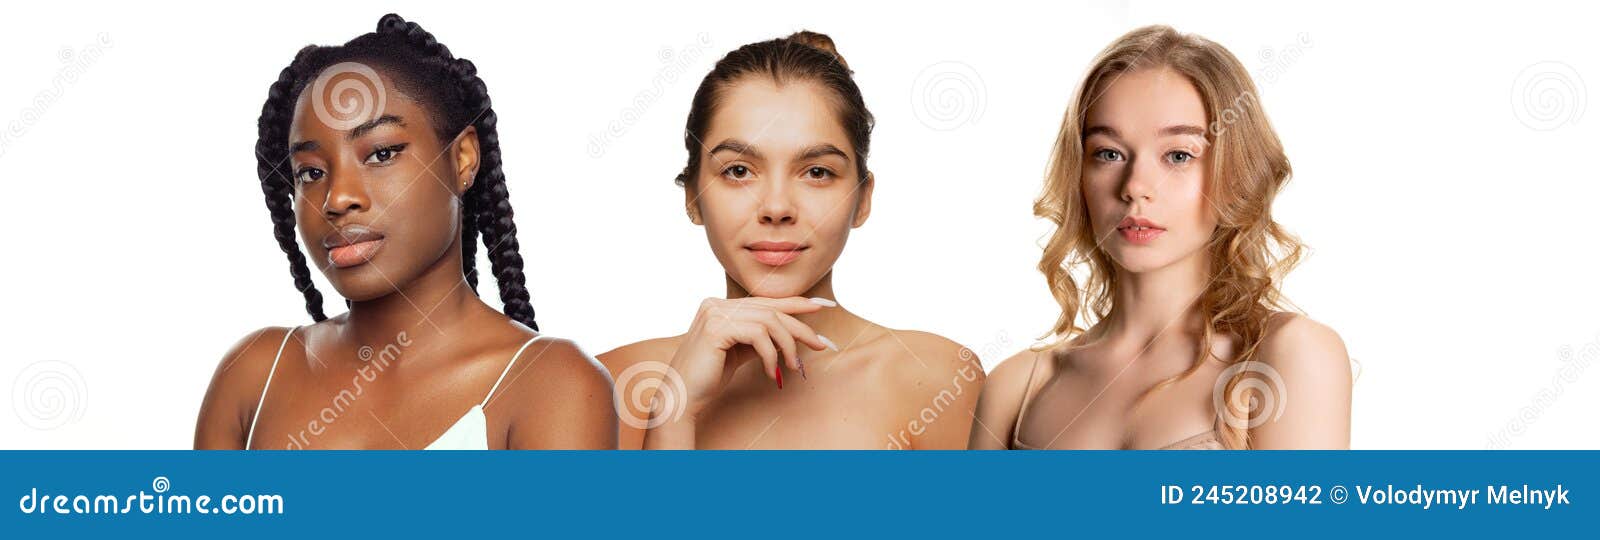 Conjunto De Retratos De Jovens Belas Mulheres Com Maquiagem Nua E Pele Lisa Perfeita Que Se Posiciona Isolada Sobre Fundo Branco Foto de Stock